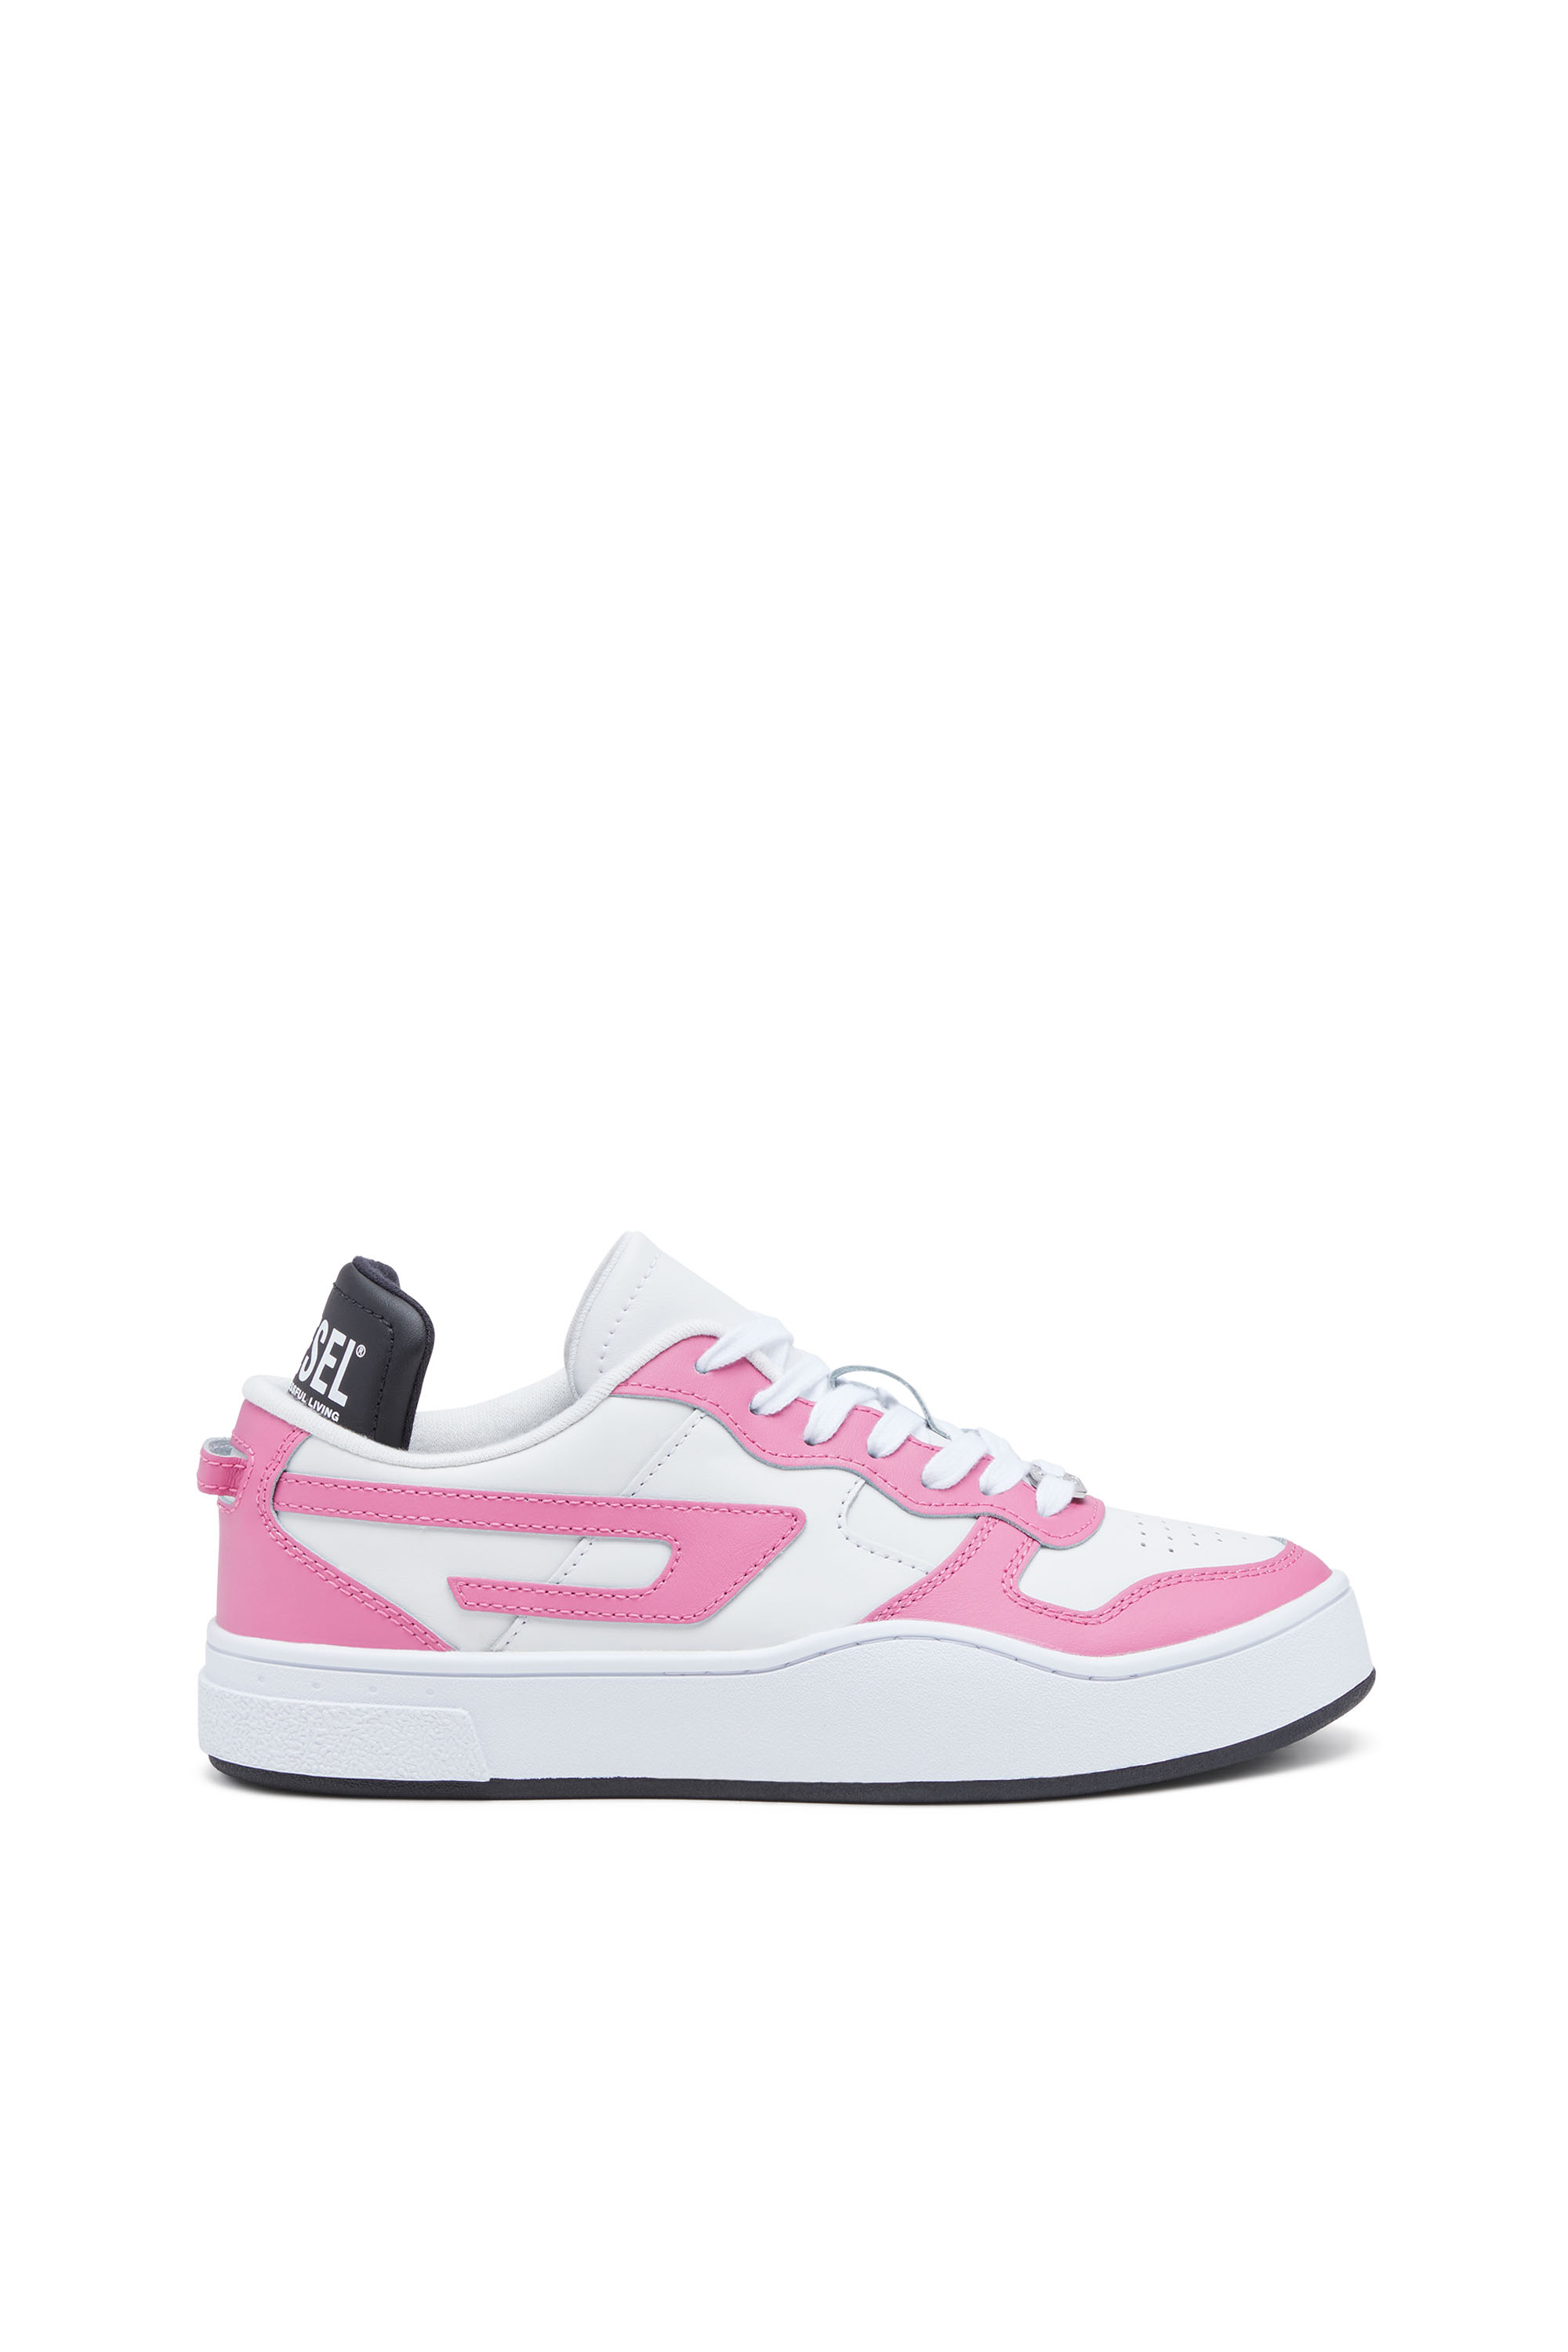 Diesel - Sneaker con inserti a contrasto - Sneakers - Donna - Multicolor